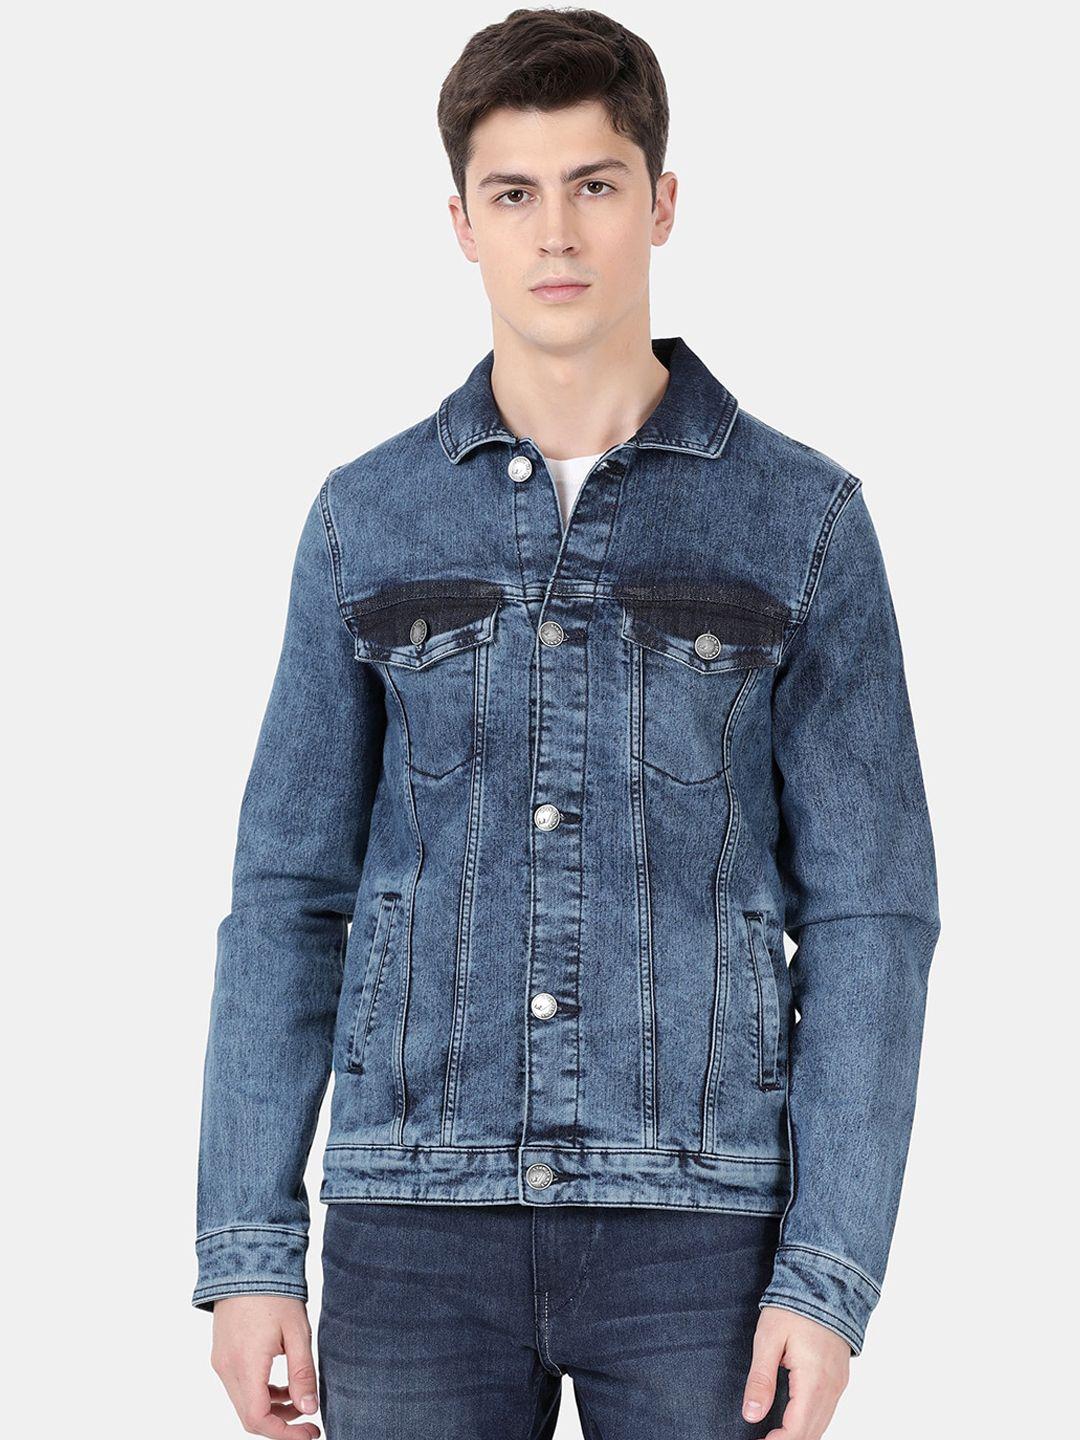 llak jeans men blue washed denim jacket